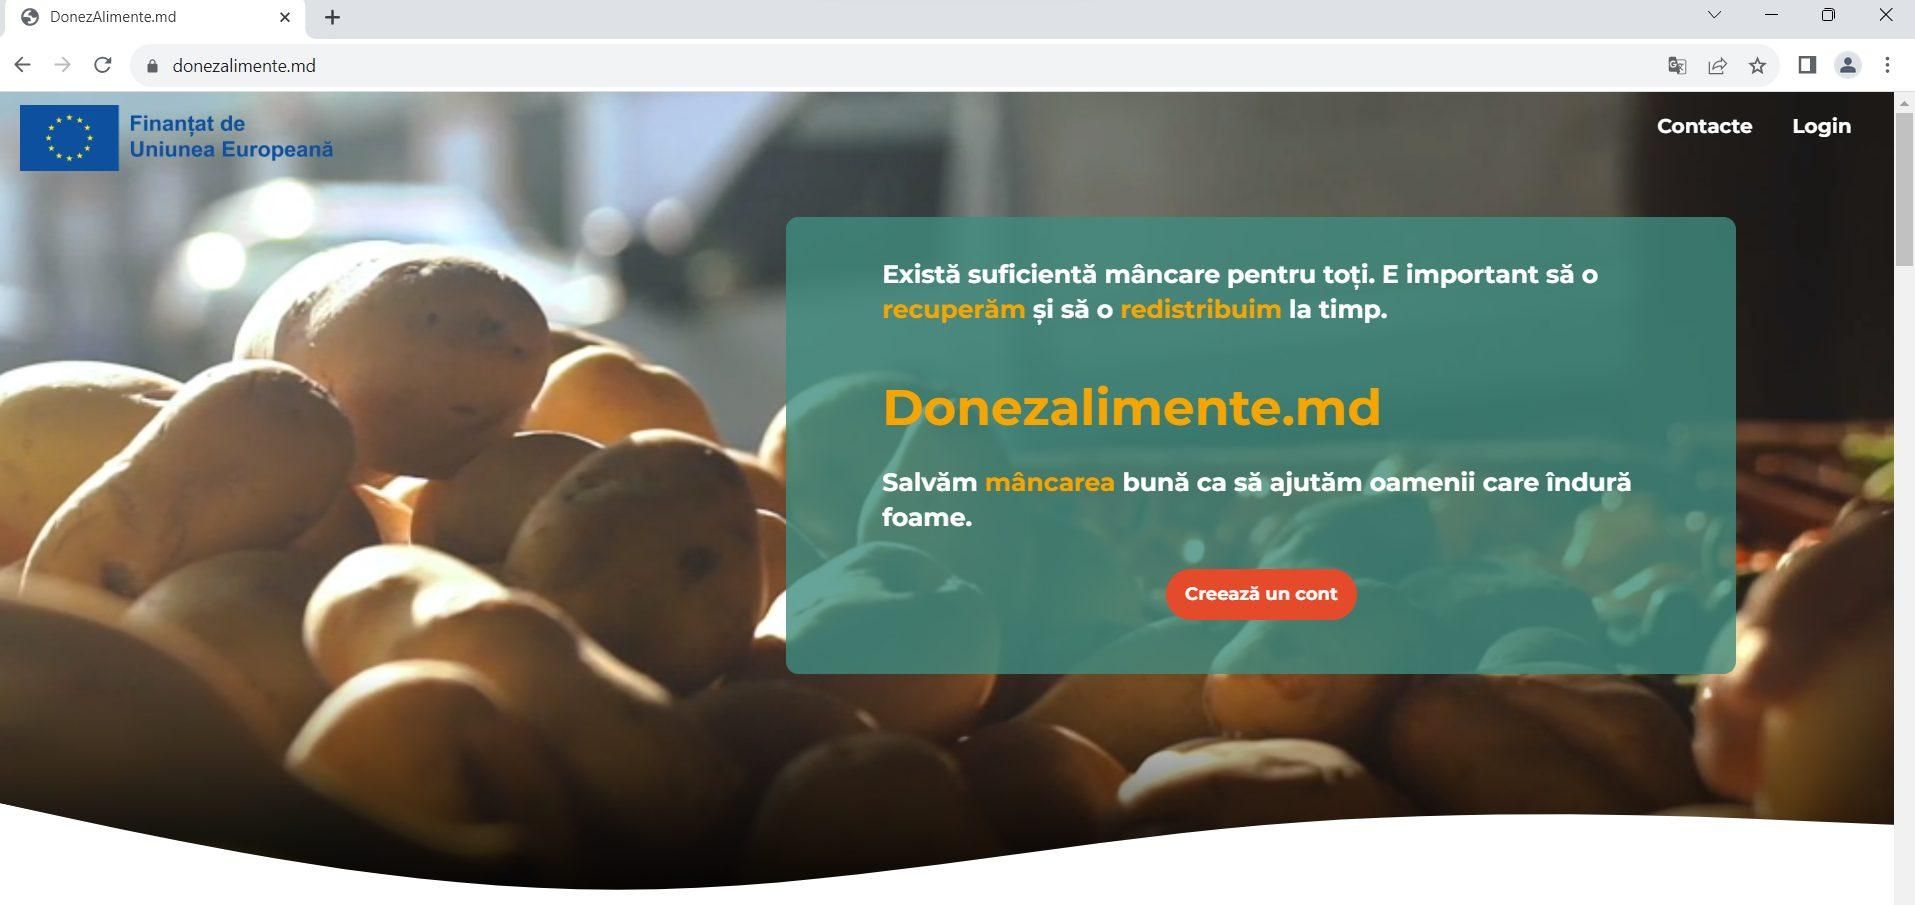 Сегодня, 14 ноября, Банк продовольствия Молдовы при поддержке Европейского Союза запустил онлайн-платформу Donezalimente.md. Платформа представляет собой инновационный цифровой проект, который упростит логистический процесс Банка Продовольствия. Продукты питания, предоставляемые экономическими агентами из сельскохозяйственной и пищевой цепочке перераспределяются в социальные столовые и другие социальные службы.